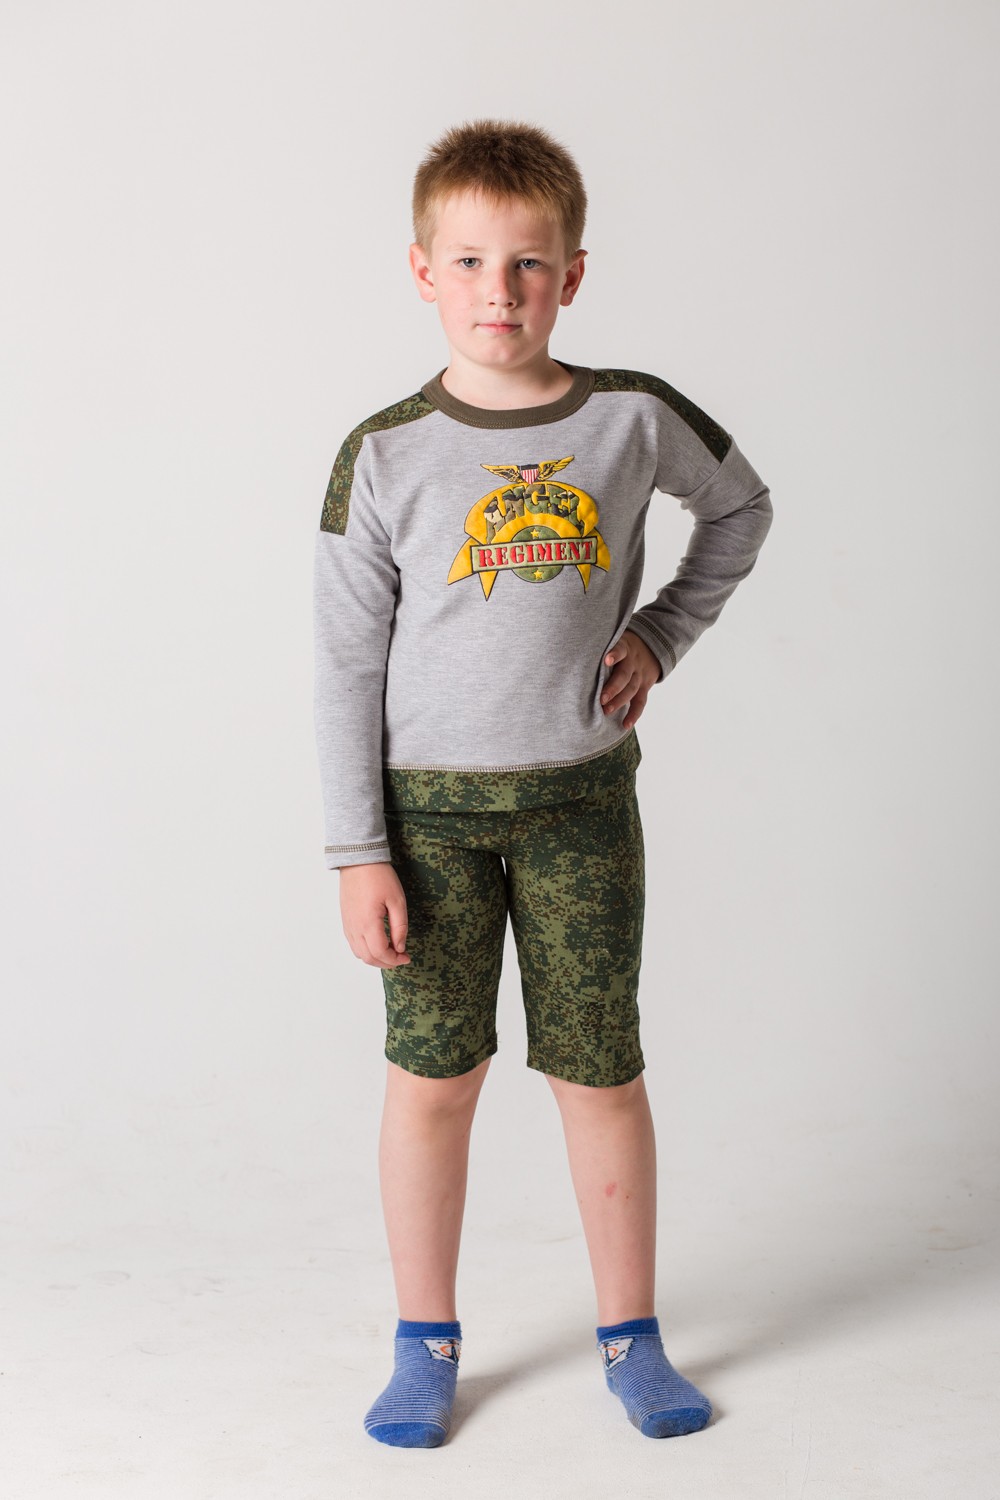 Толстовка детская для мальчика "Армия" с длинным рукавом